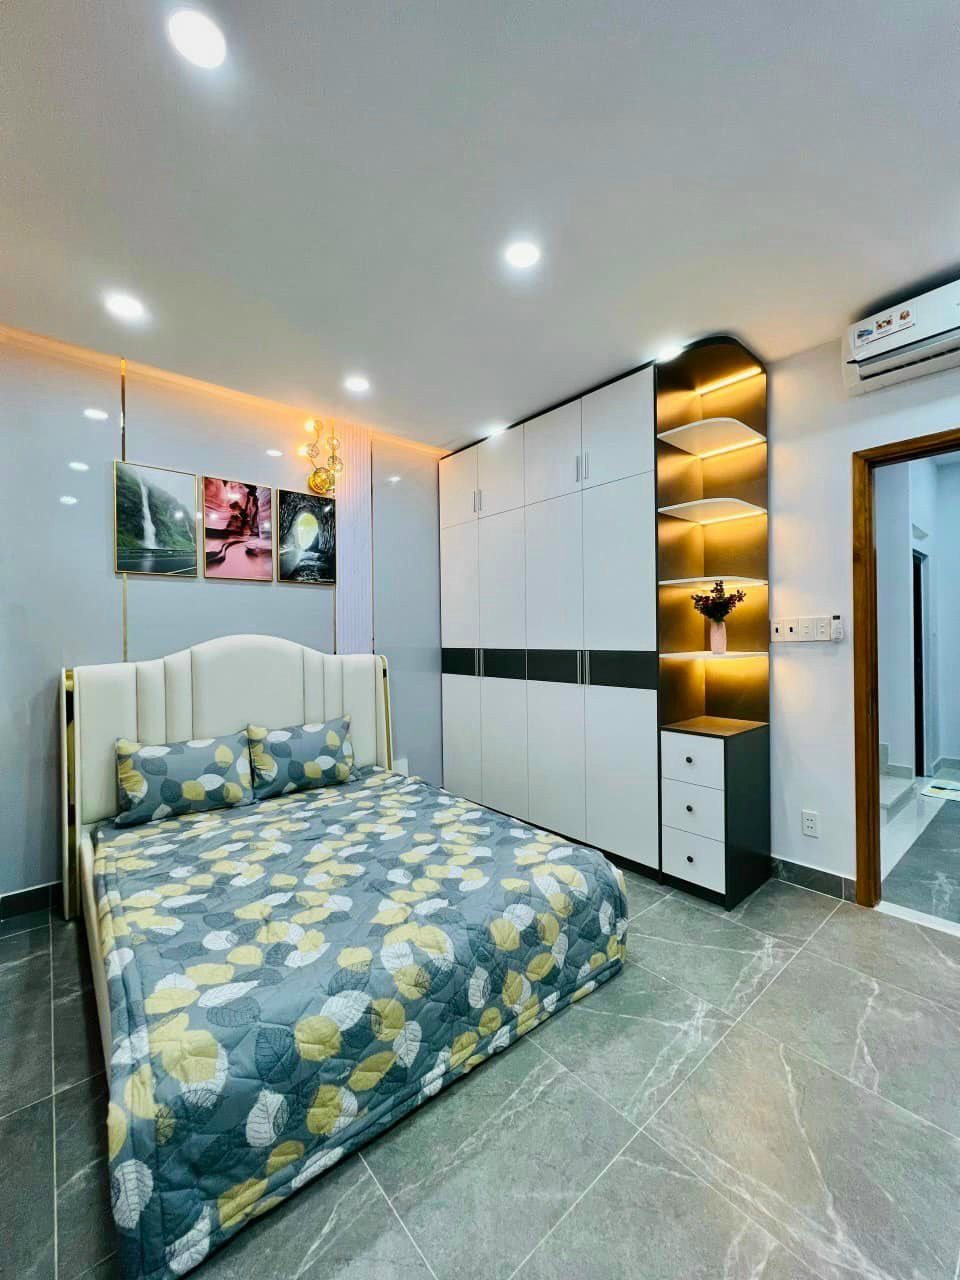 Cần bán nhà mới 1 trệt 3 lầu khu dân cư cao cấp - Tô Hiệu, Tân Phú. LH 0904.996.171 